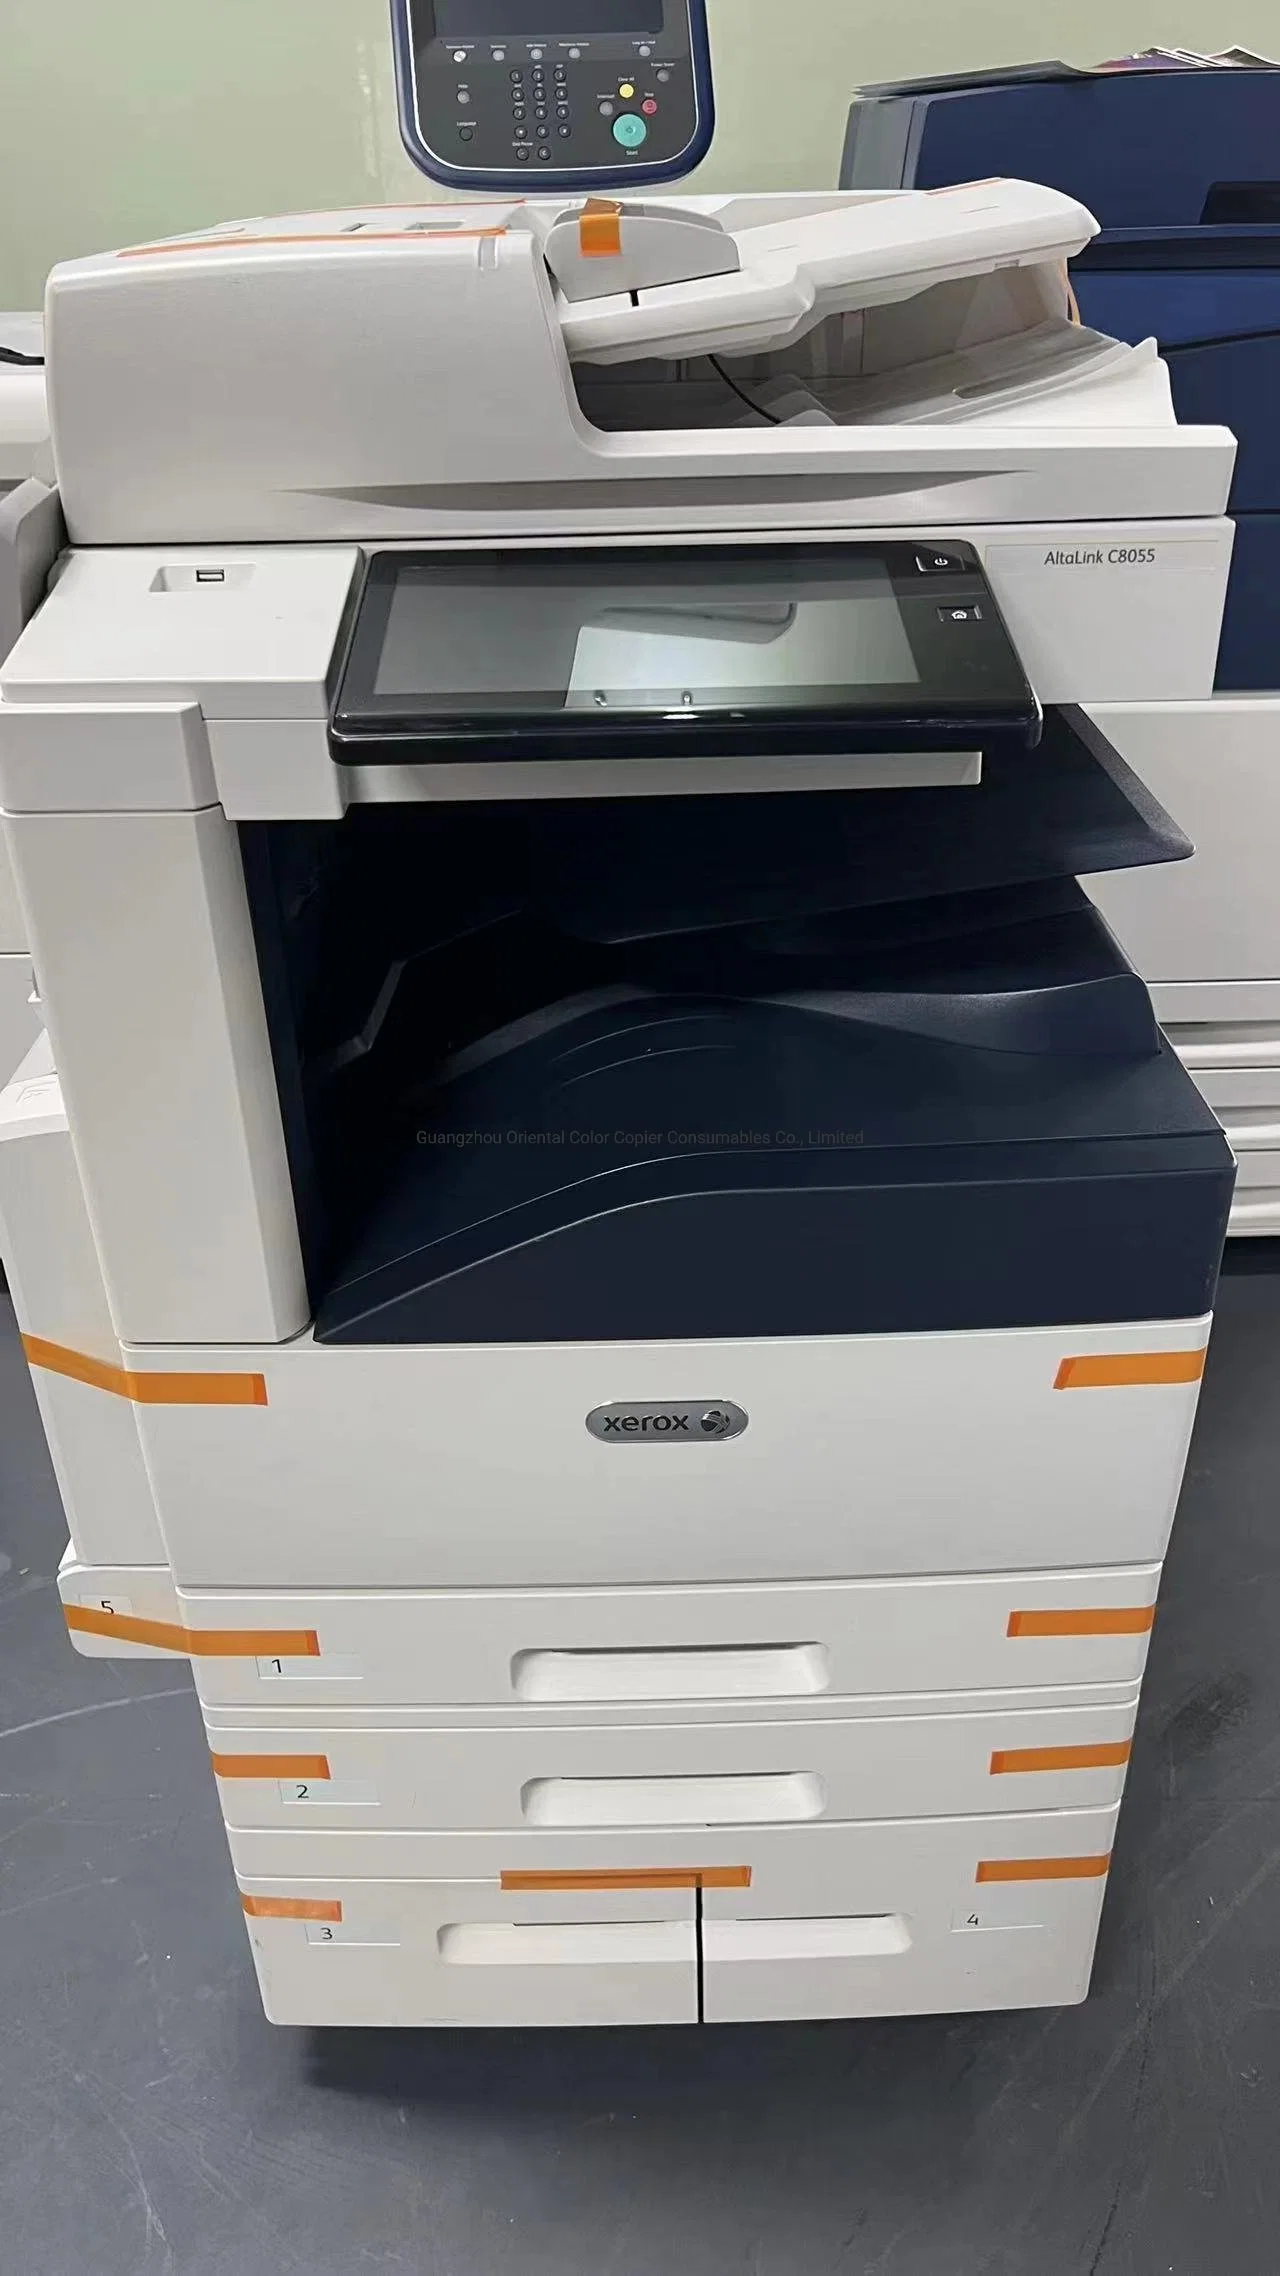 Für Xerox Printer C8055 Photco Copy und Scanner aus zweiter Hand Duplikator Laser-Photopy-Maschine